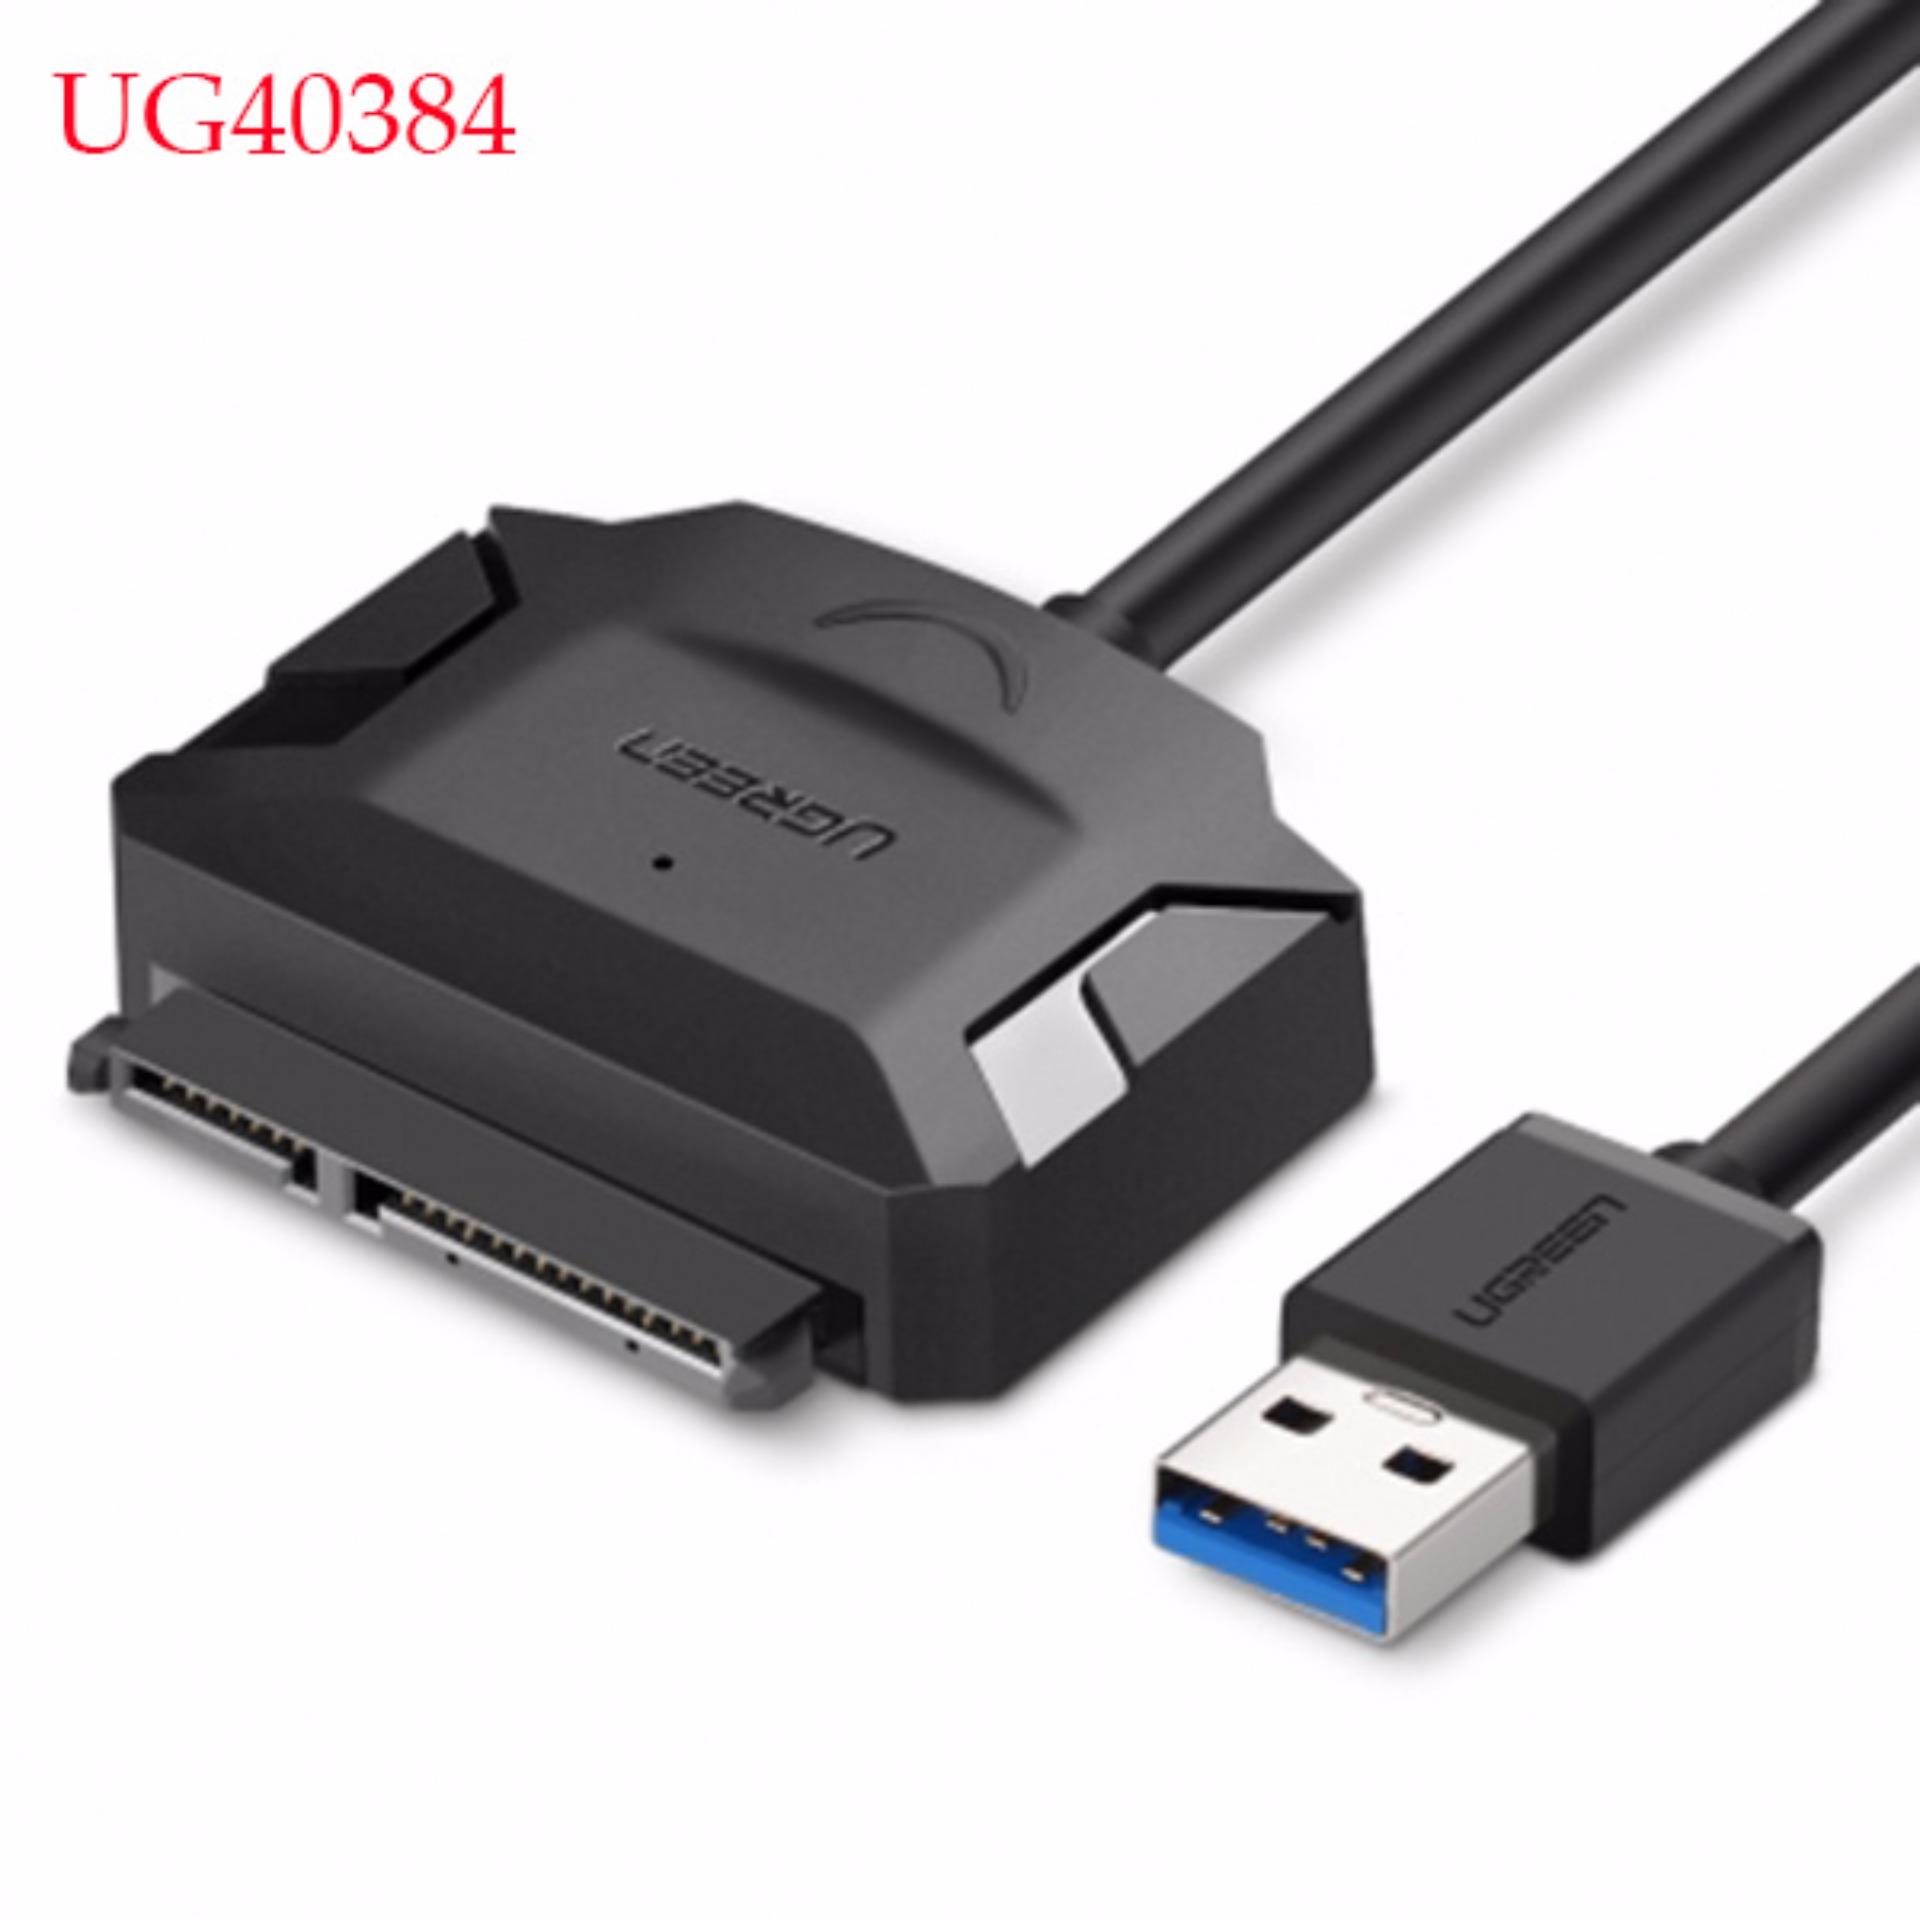 Cáp chuyển đổi USB 3.0 sang sata kết nối HDD qua cổng USB UG40384